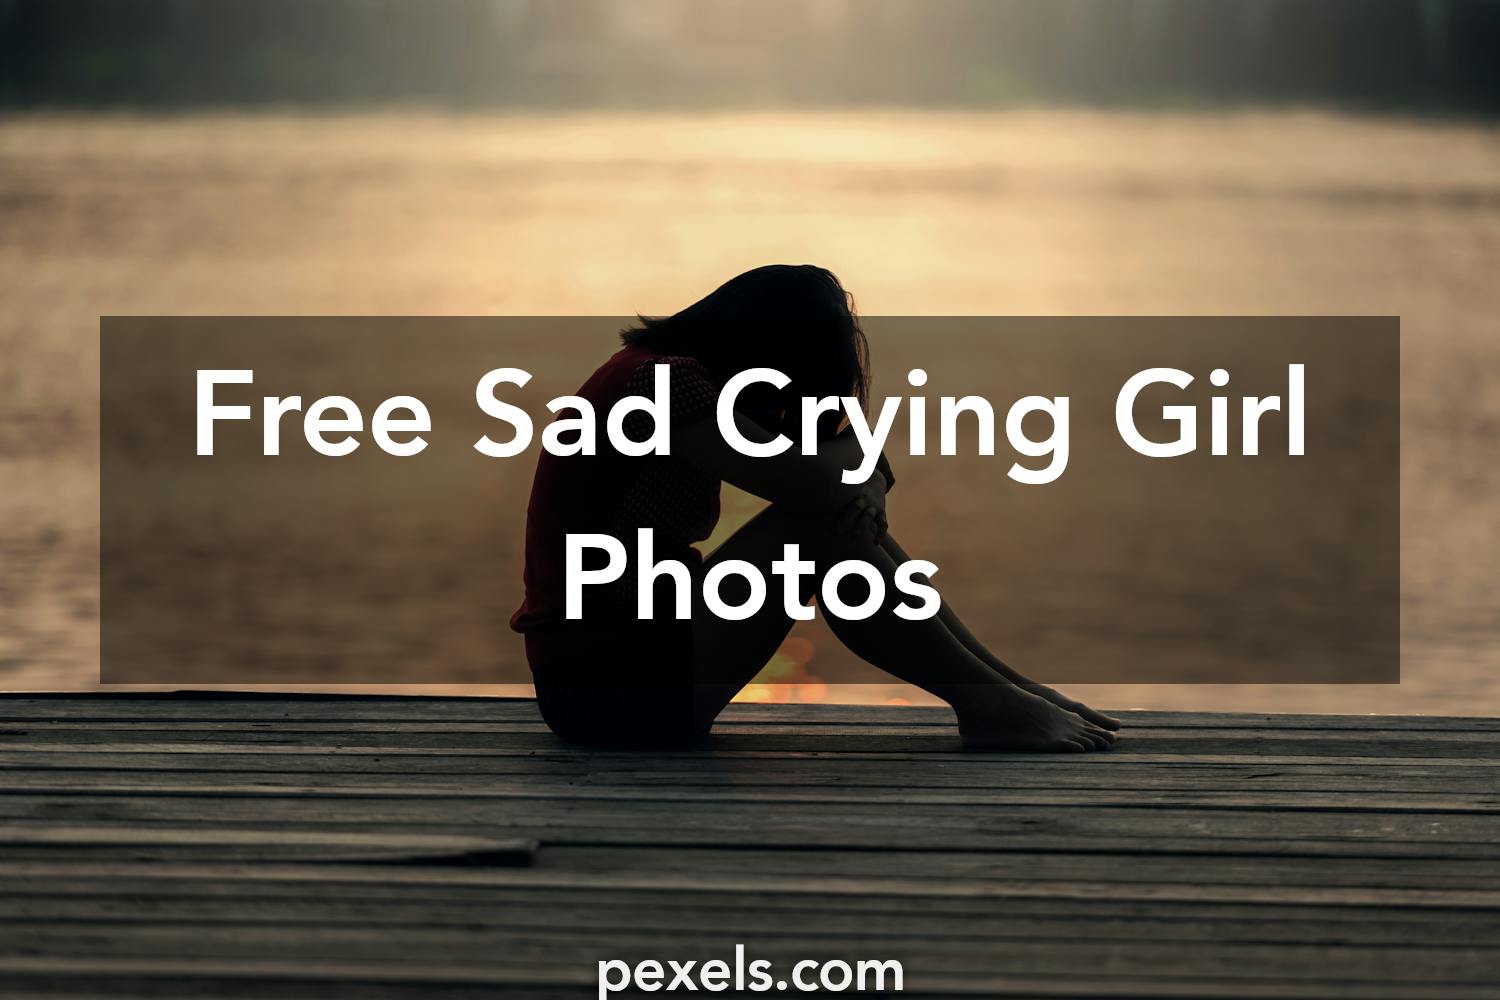 1000 Great Sad Crying Girl Photos Pexels Free Stock Photos